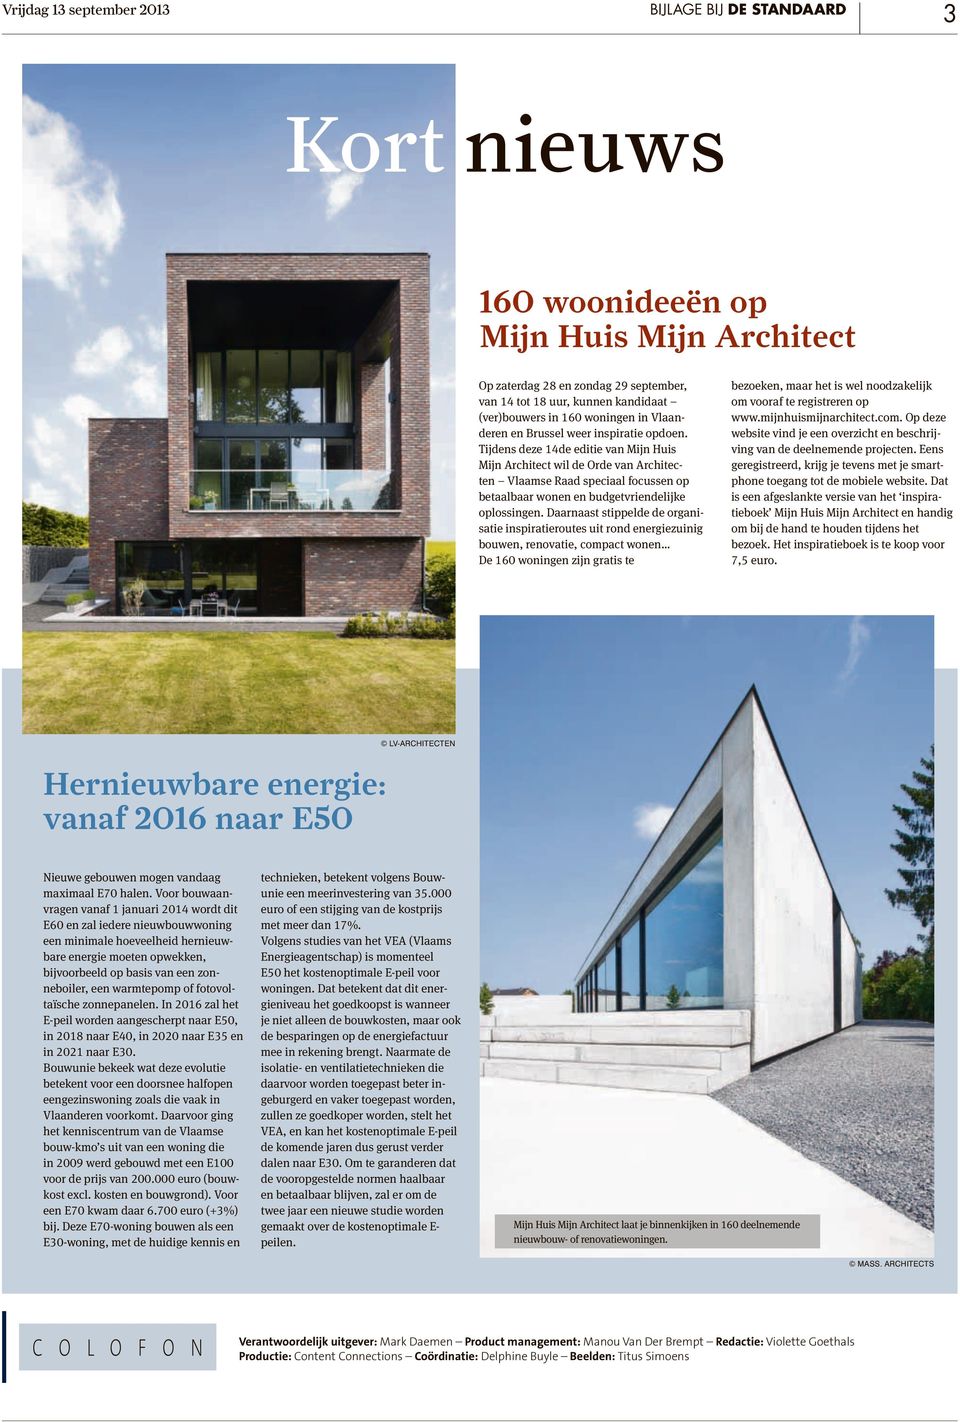 Tijdens deze 14de editie van Mijn Huis Mijn Architect wil de Orde van Architecten Vlaamse Raad speciaal focussen op betaalbaar wonen en budgetvriendelijke oplossingen.